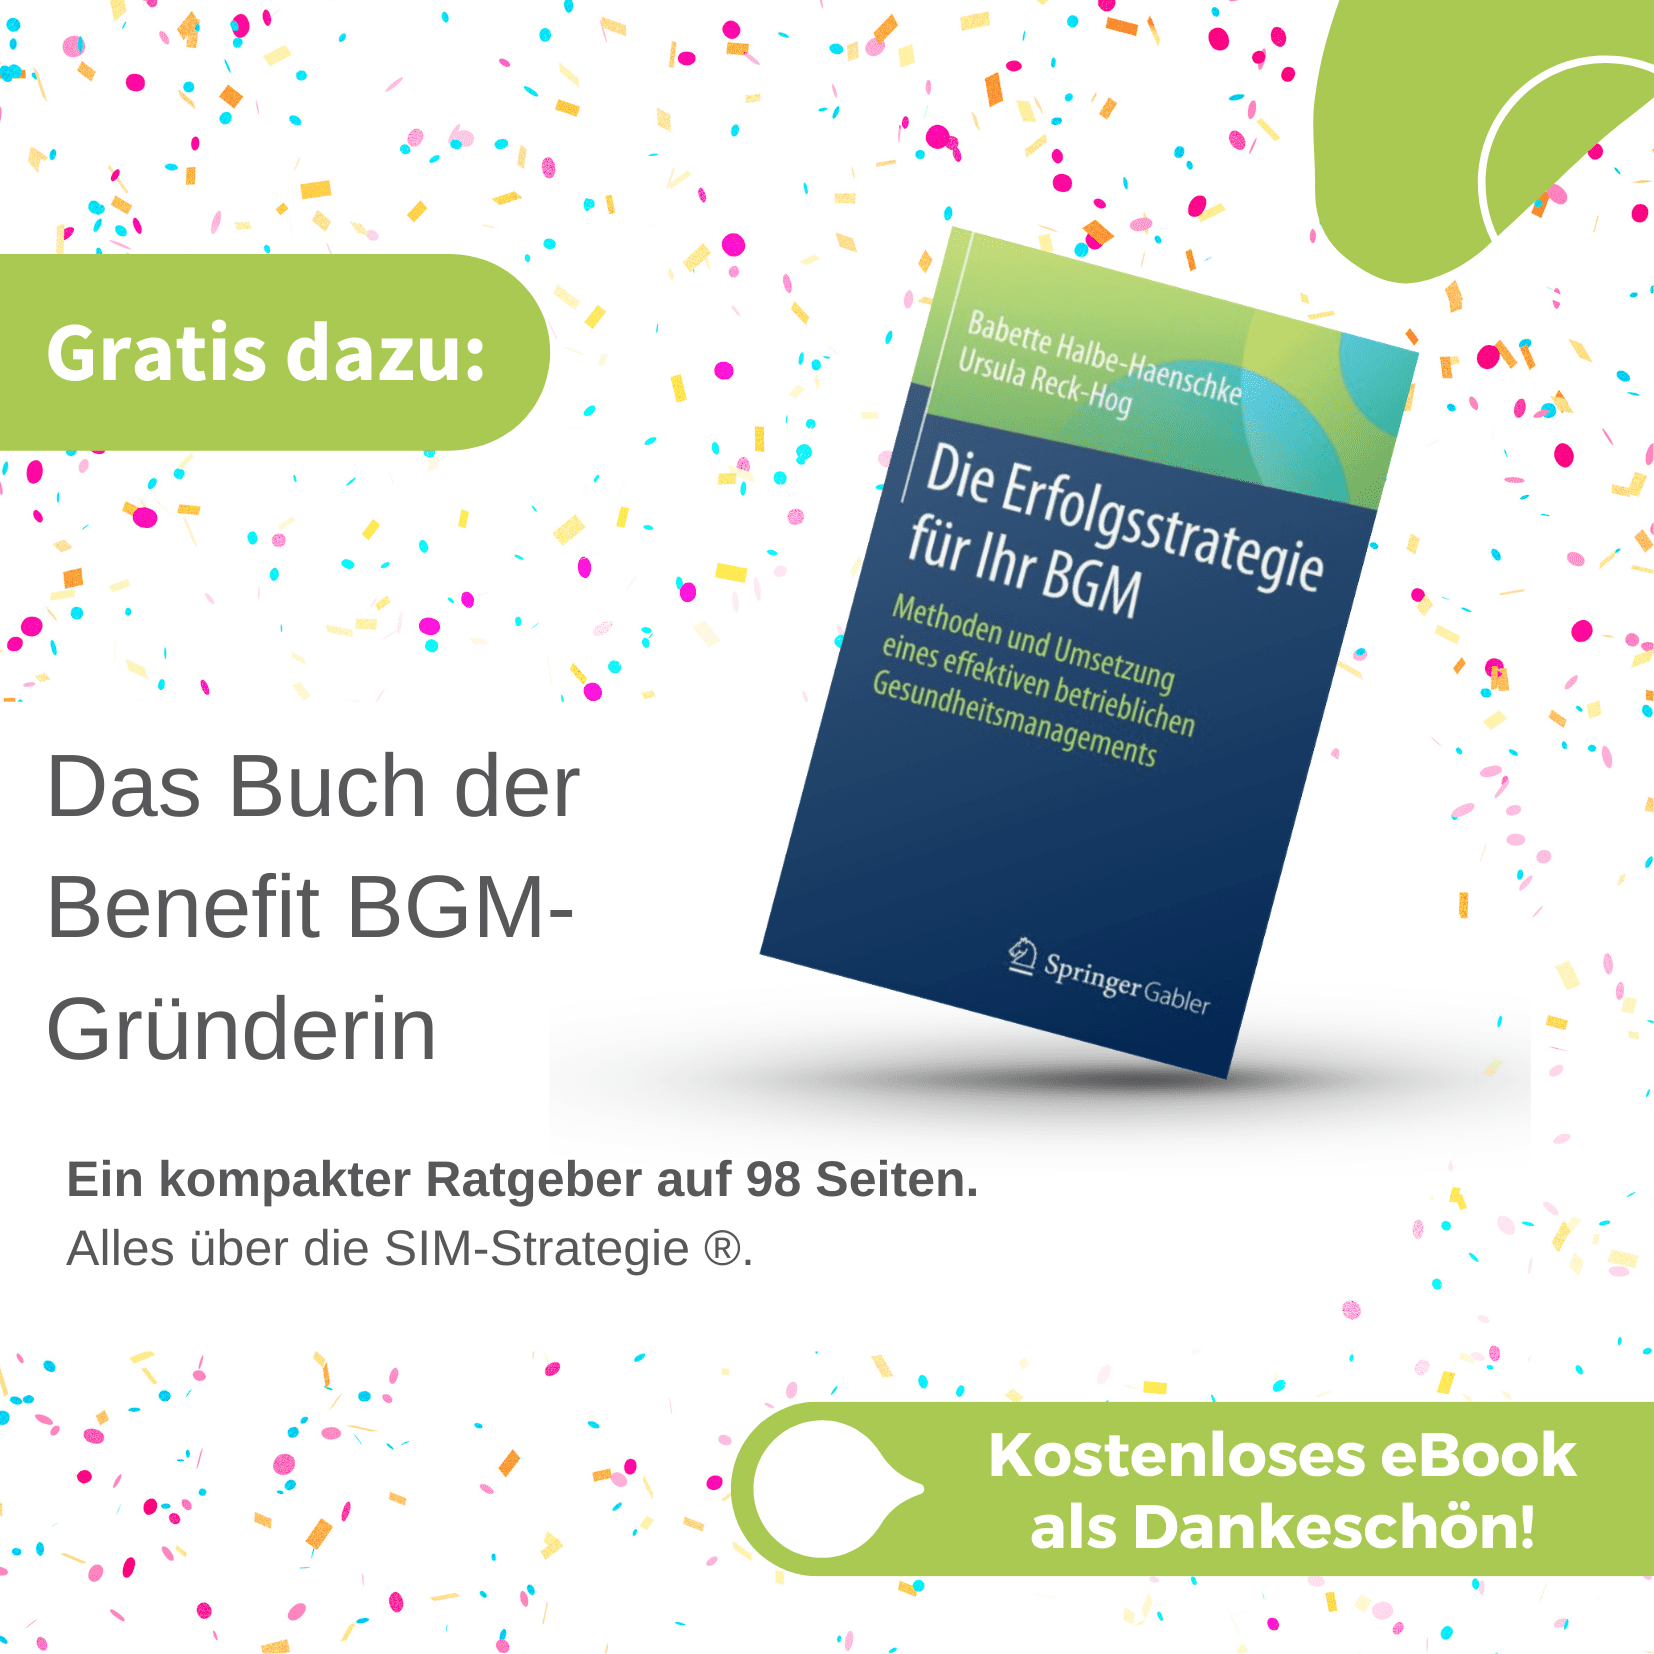 BGM-Ratgeberbuch von Benefit BGM Gründerin und Geschäftsführerin Babette Halbe-Haenschke. Downloadbar als eBook.